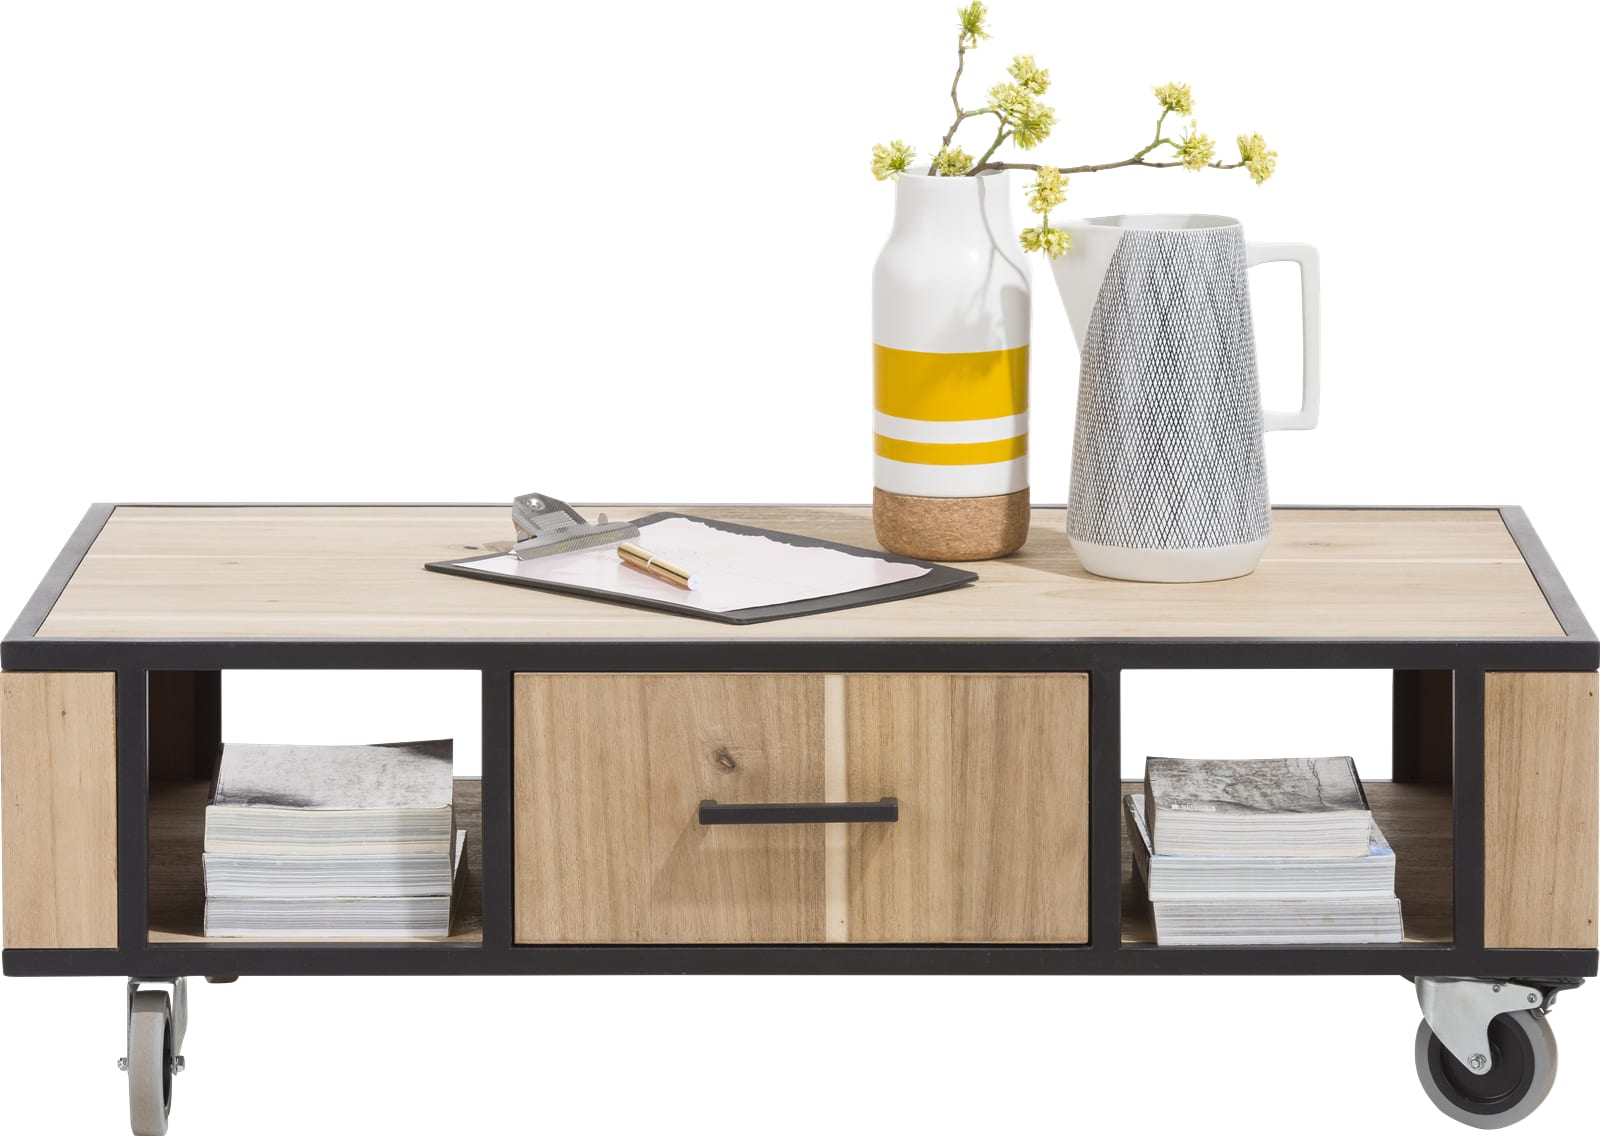 mengen klauw Gedetailleerd KINNA" salontafel - 110 x 60 cm - XOOON: Betaalbaar design